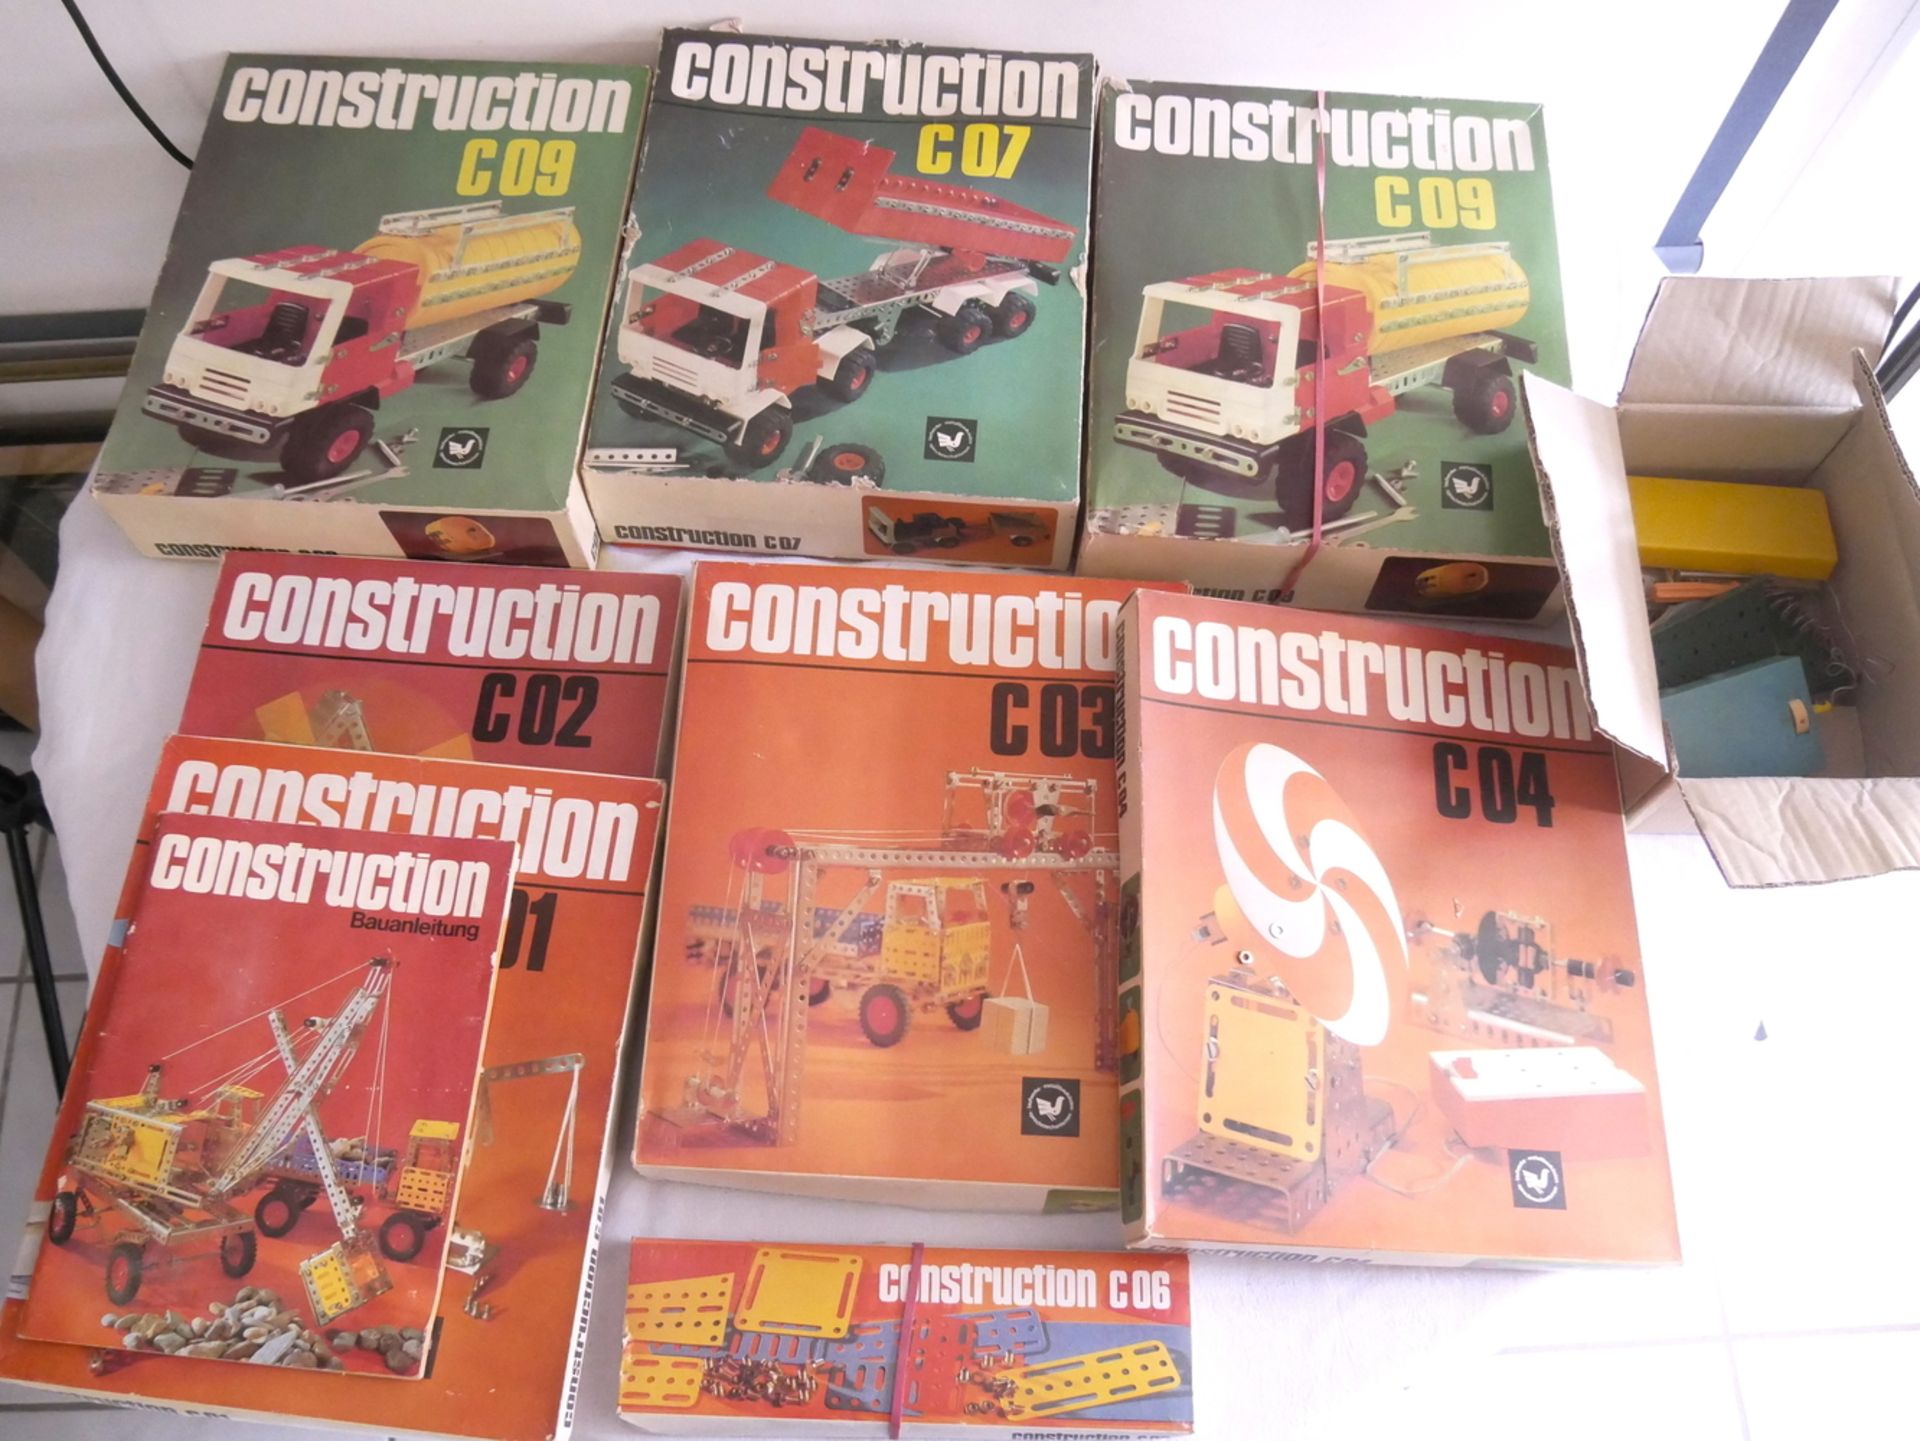 DDR Metallbaukästen "Construction", insgesamt 8 Kartons, dabei C01 - C04, C06, C07 und 2 x C09,